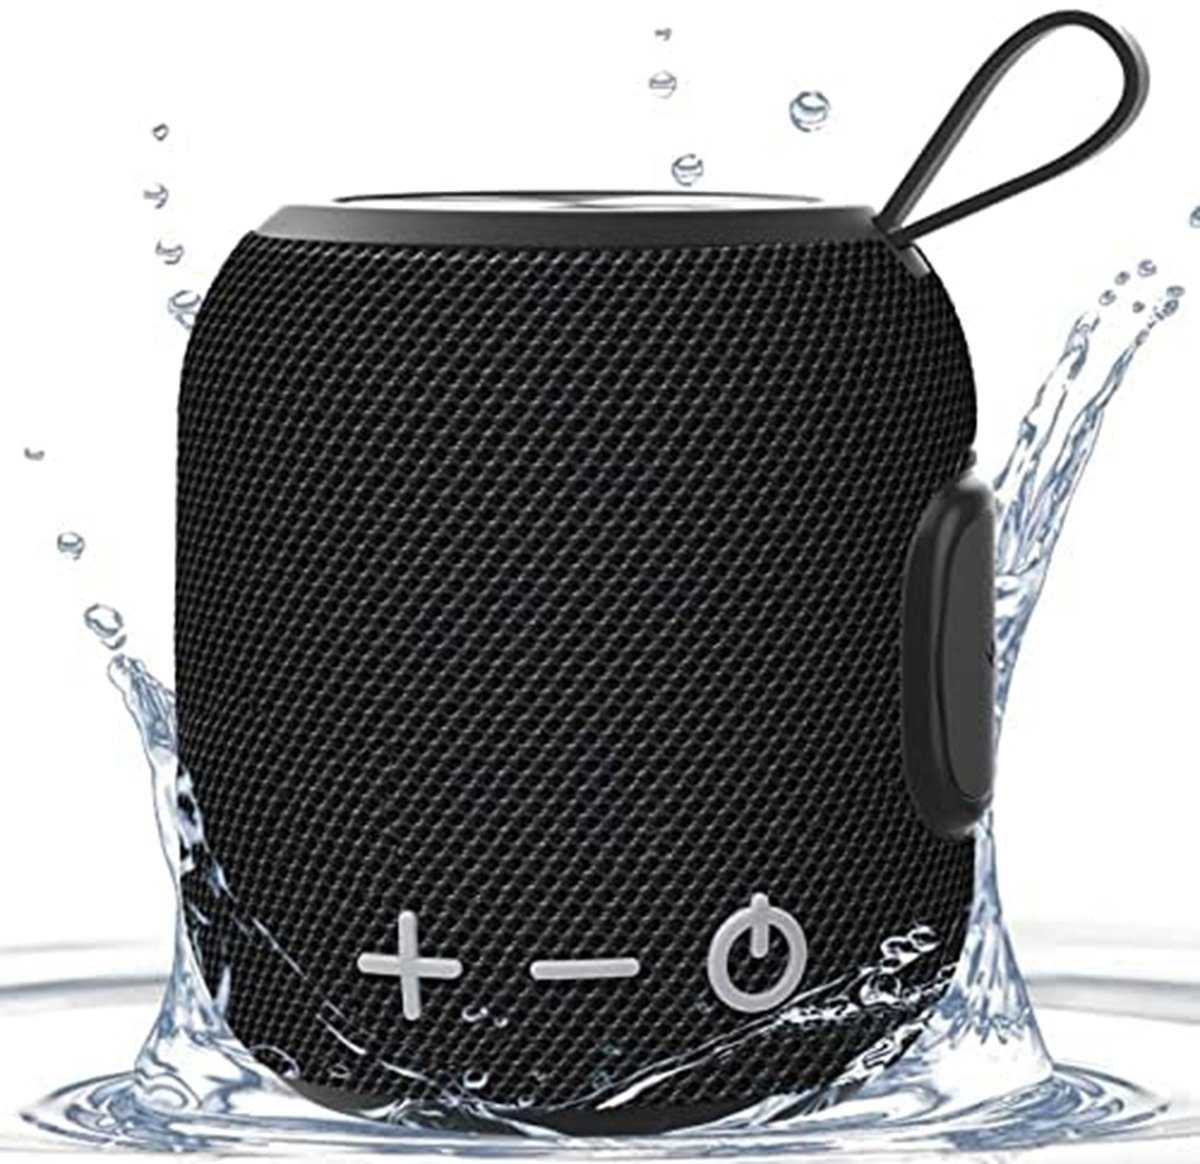 Leway »Bluetooth Lautsprecher Wasserdicht Dusche, Drahtloser Lautsprecher  Box Outdoor Musikbox Stereo Surround Sound Tragbarer« Multifunktionsspieler  online kaufen | OTTO